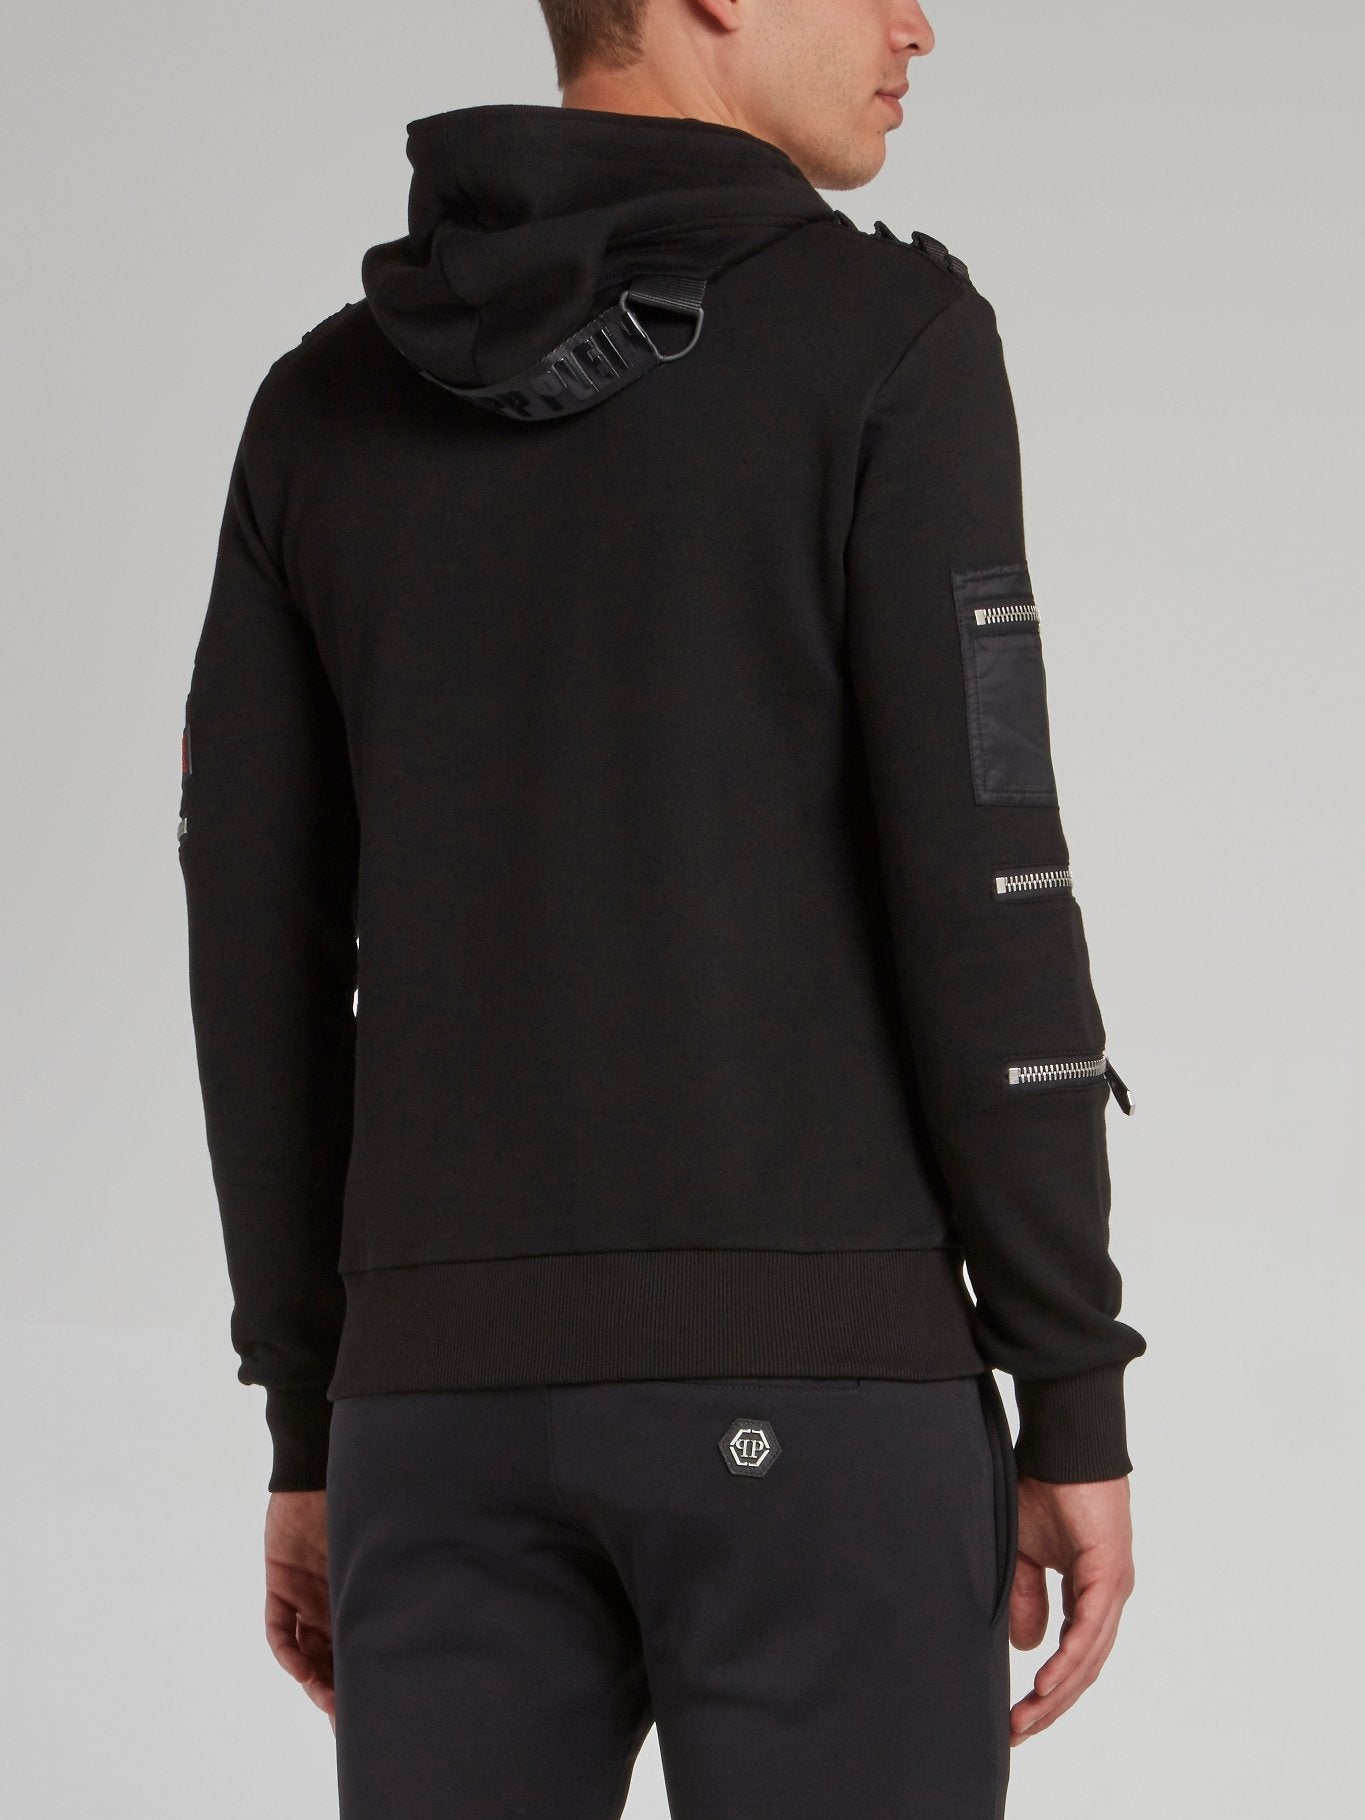 Black Zipper Detail Hoodie Sweatshirt